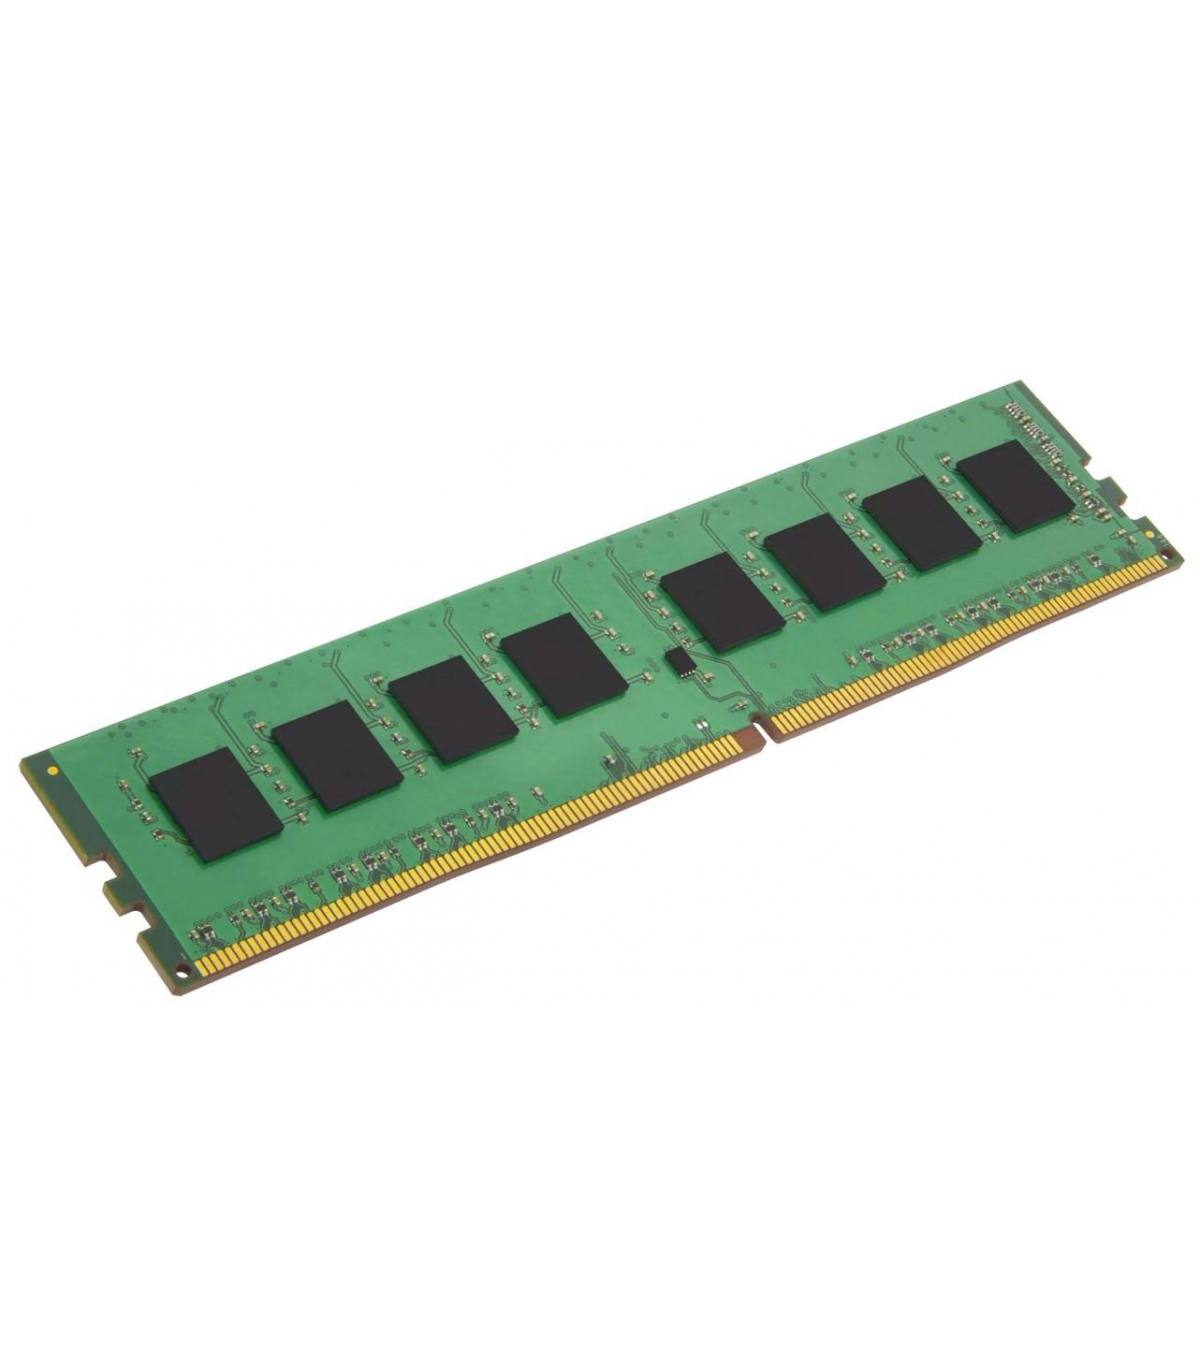 RAM HYNIX/IBM 4GB 2Rx4 PC3 10600R 49Y1445 HMT151R7TFR4C-H9 D7 AB-C 1045